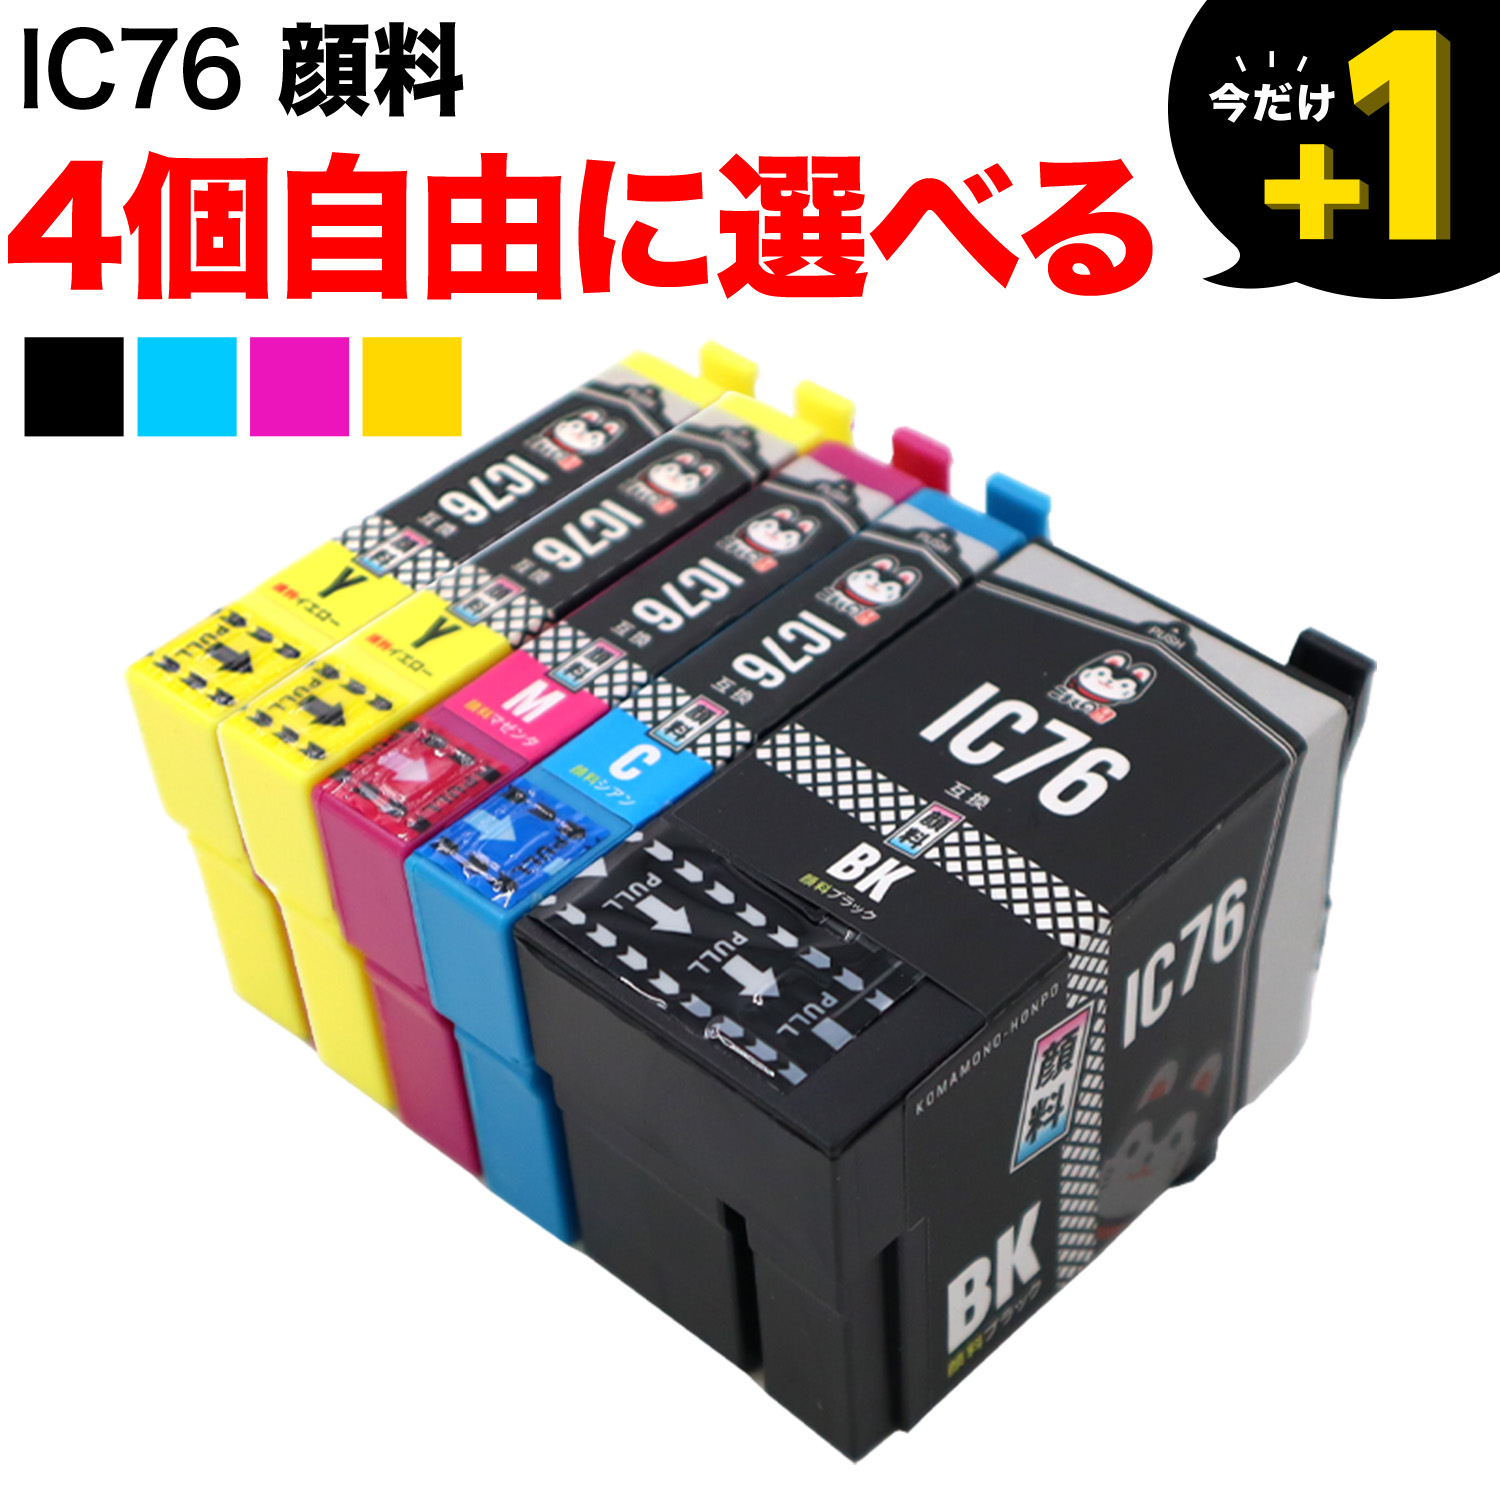 エプソン用 IC76互換インクカートリッジ 大容量 顔料 自由選択4個セット フリーチョイス 【送料無料】 選べる4個セット （品番：QR-FC-IC76PG-4）詳細情報【こまもの本舗】